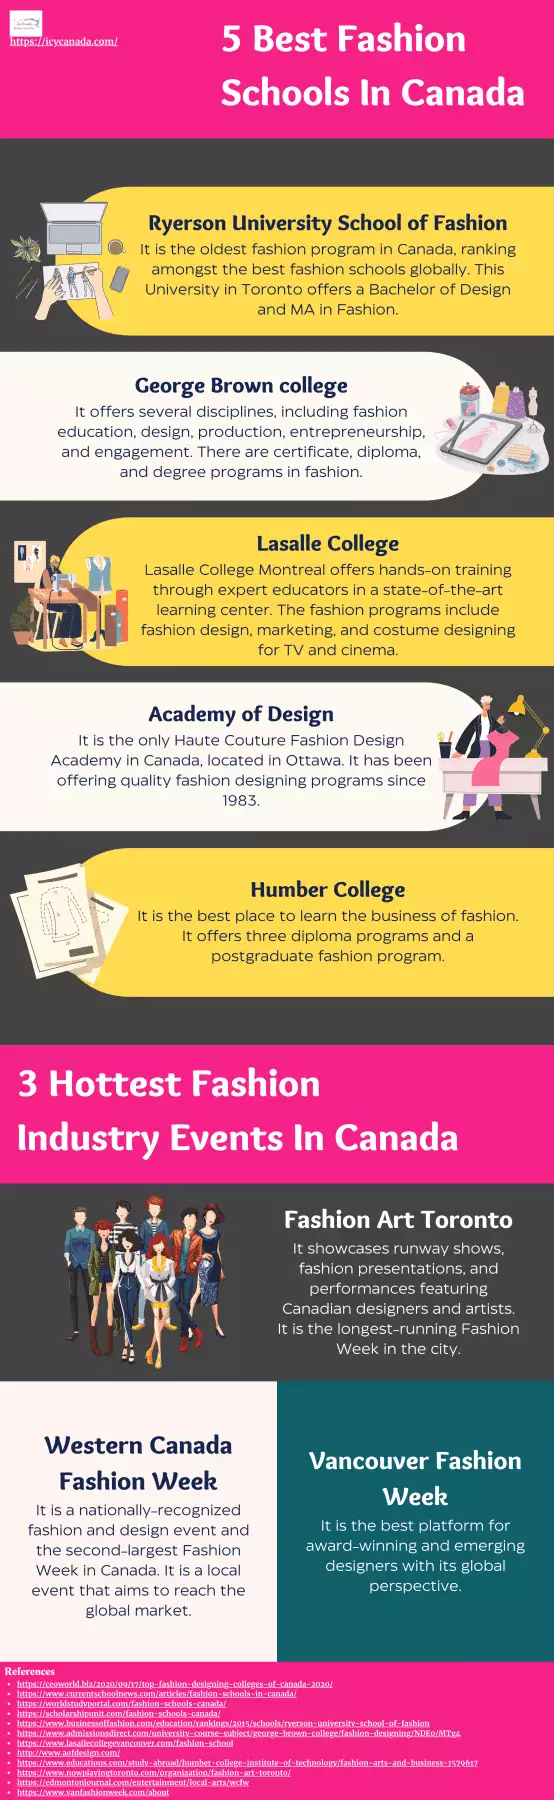 5 Best Fashion Schools In Canada